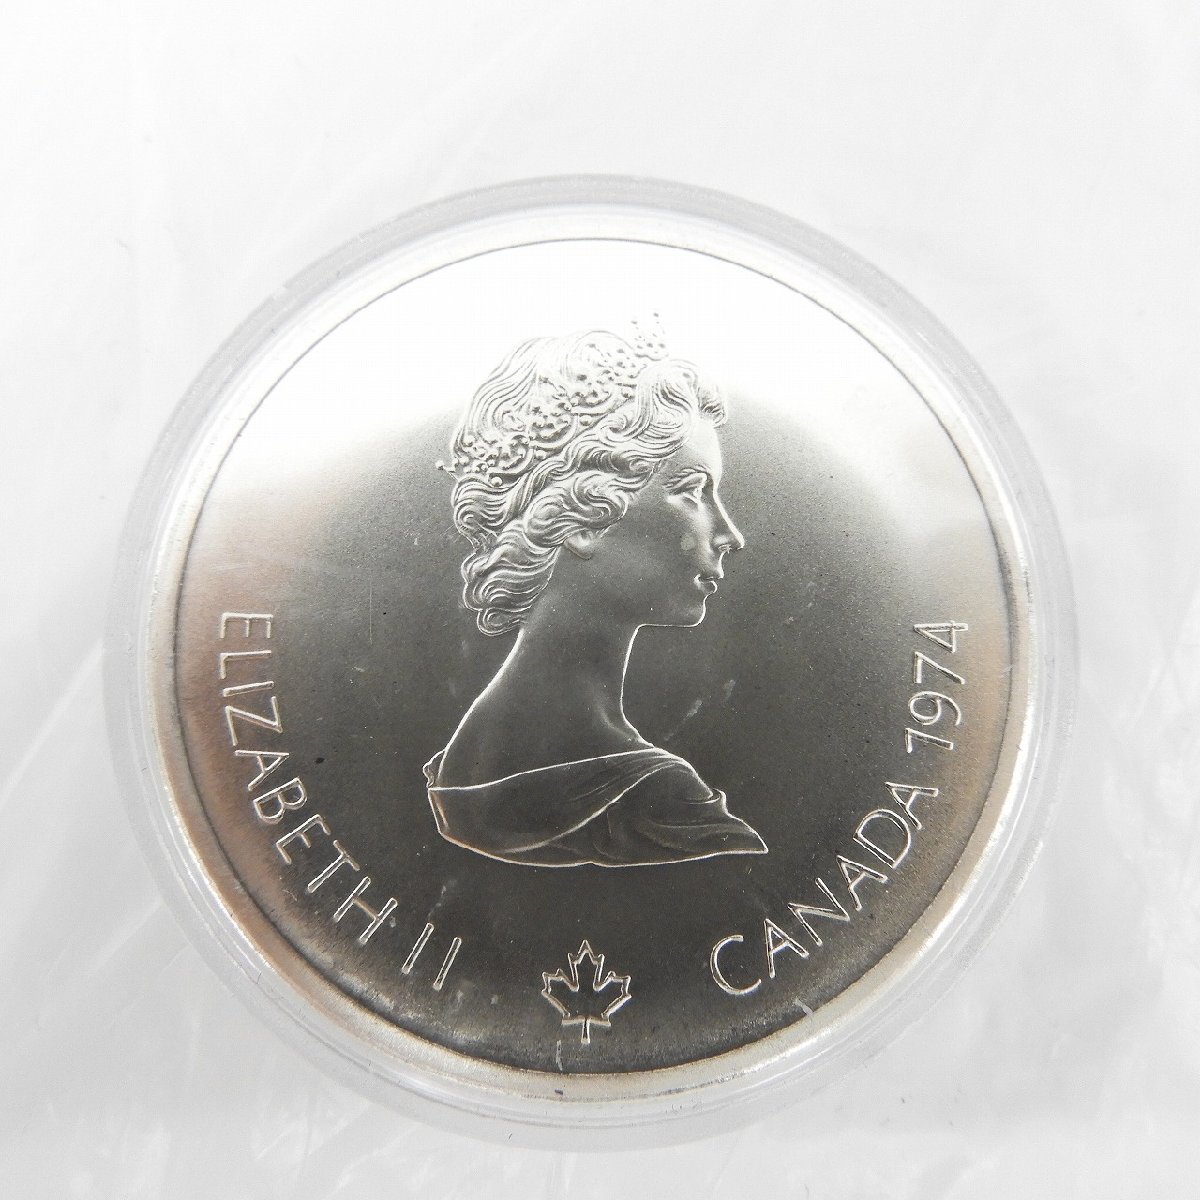 【記念コイン】カナダモントリオールオリンピック 1976年記念銀貨 10ドル+5ドル 合計4枚セット 11523175 0318_画像5